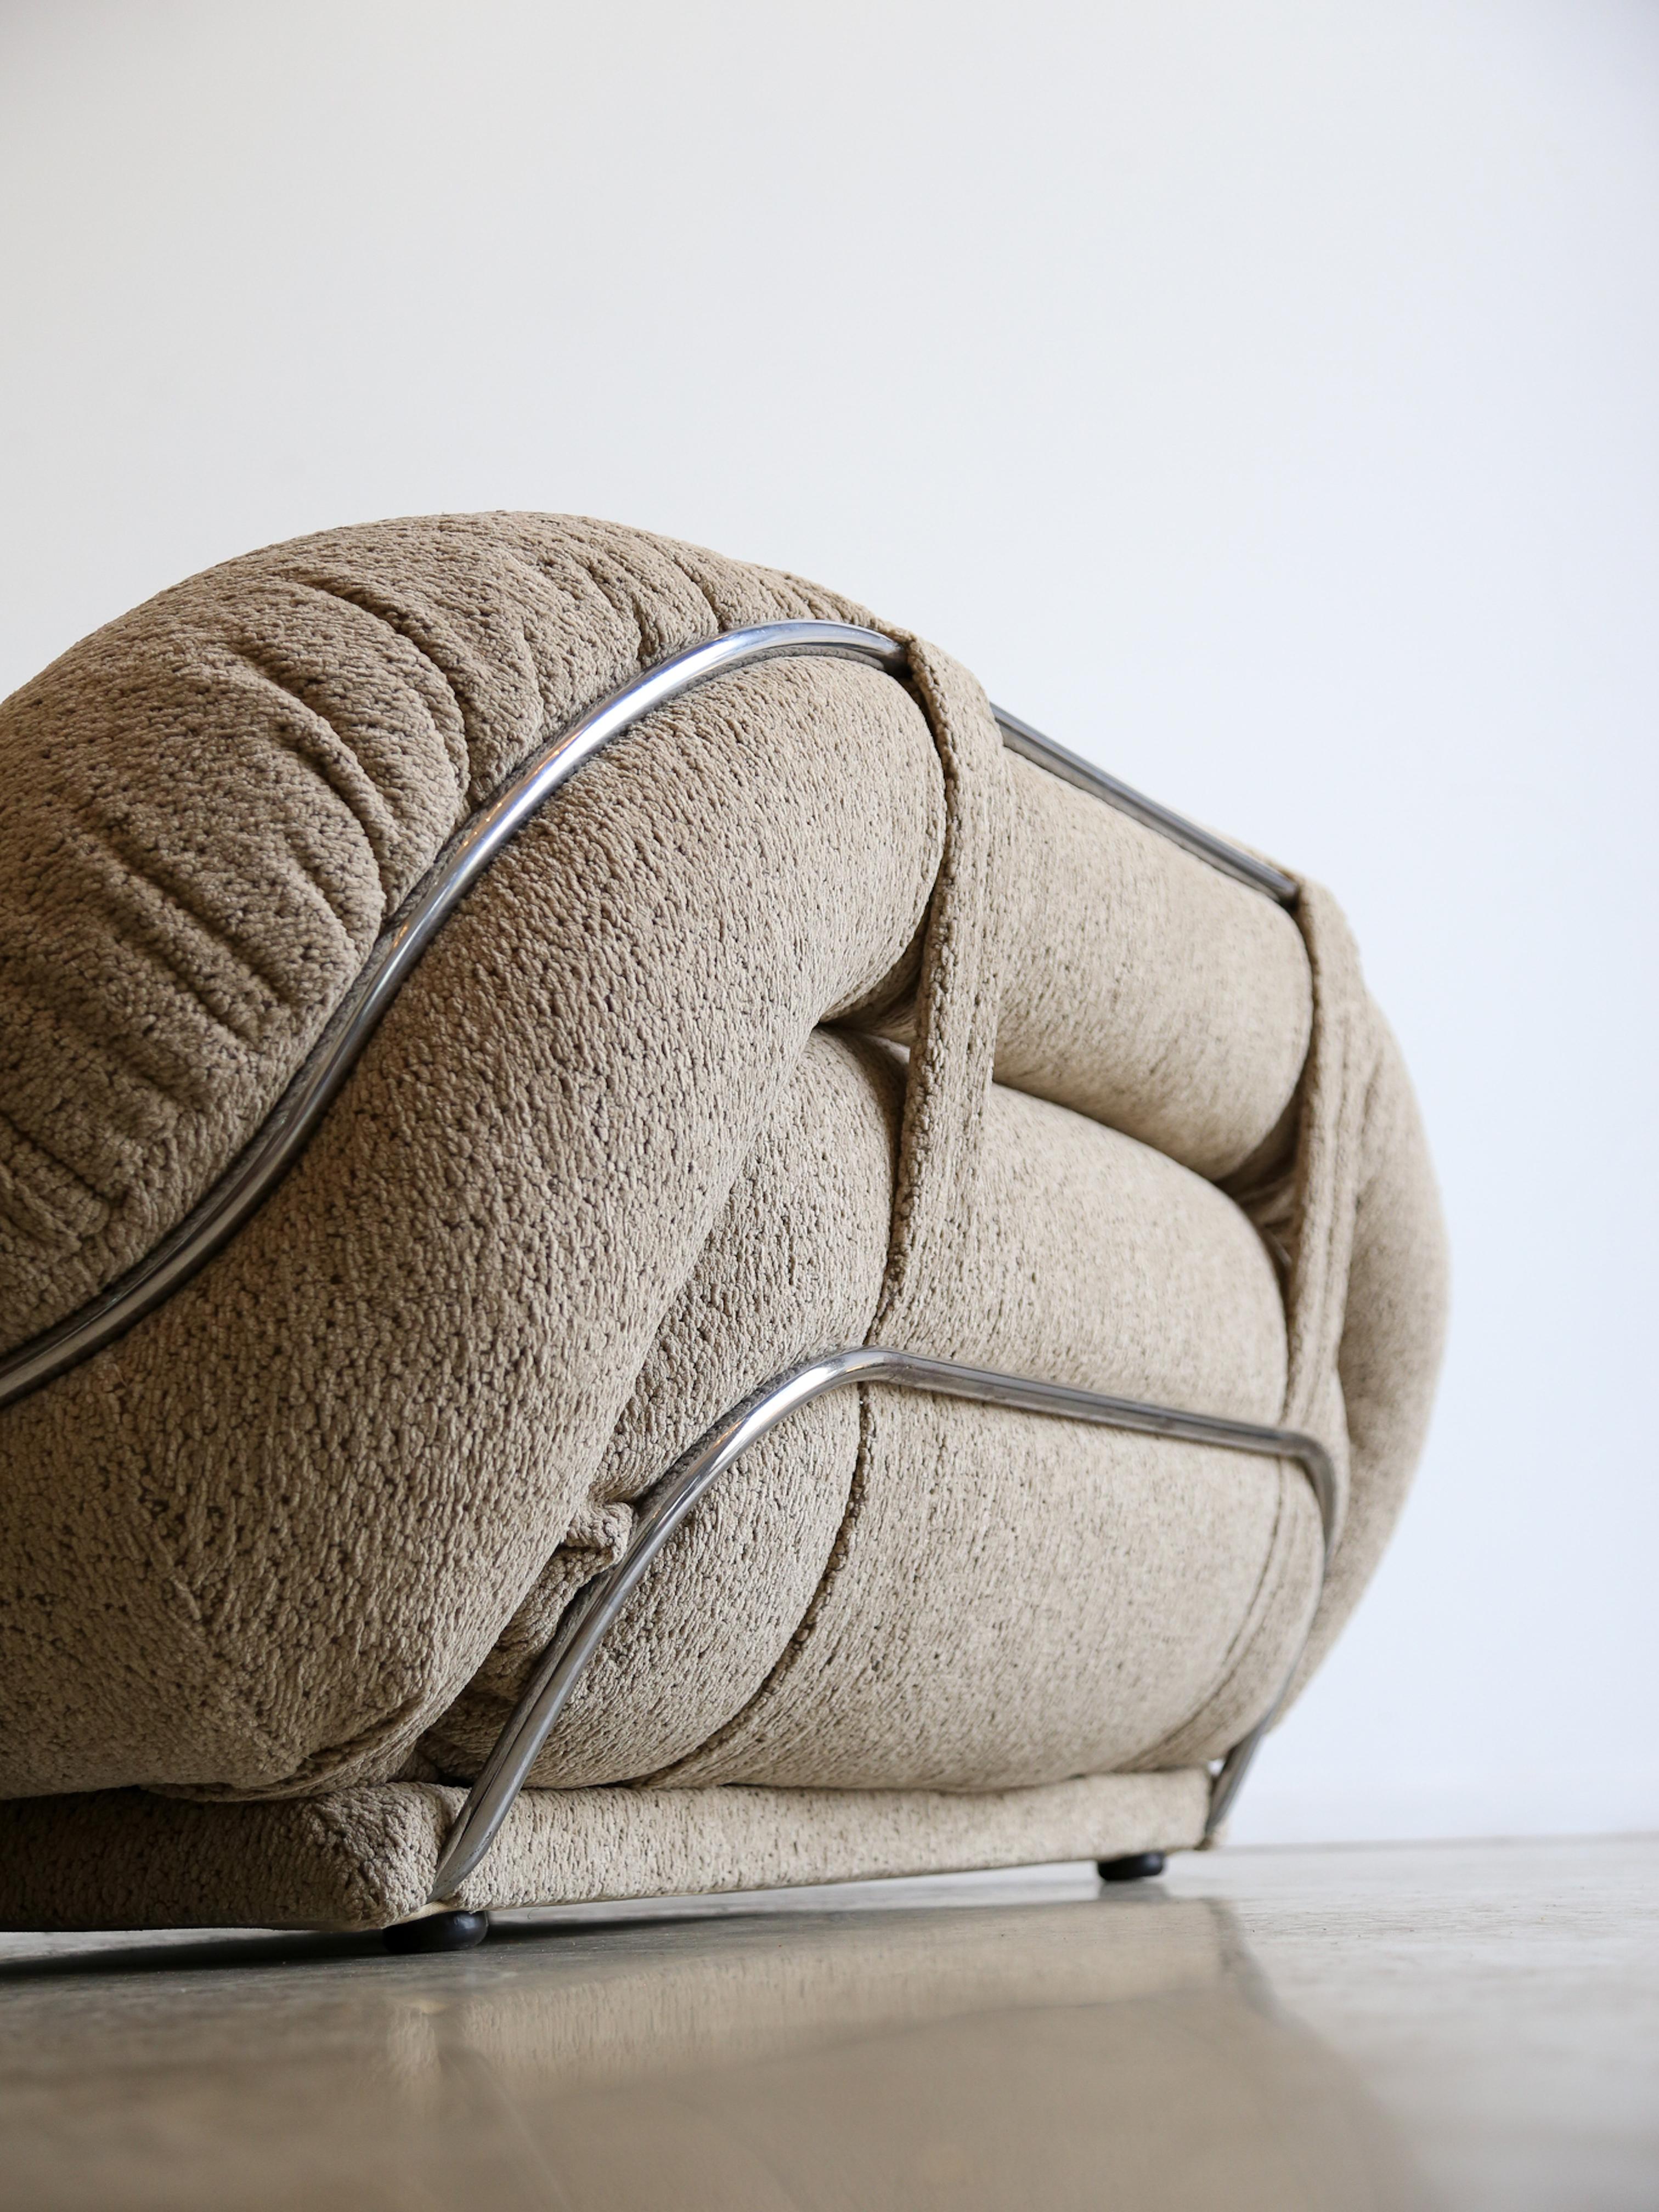 Zweisitzer-Sofa aus Chrom und Bouclè, Mid Century Modern. 

Das verchromte Gestell verleiht dem Sofa ein elegantes, modernes und oft luxuriöses Aussehen. Sofas mit Chromrahmen sind aufgrund ihrer Ästhetik und Langlebigkeit in der zeitgenössischen